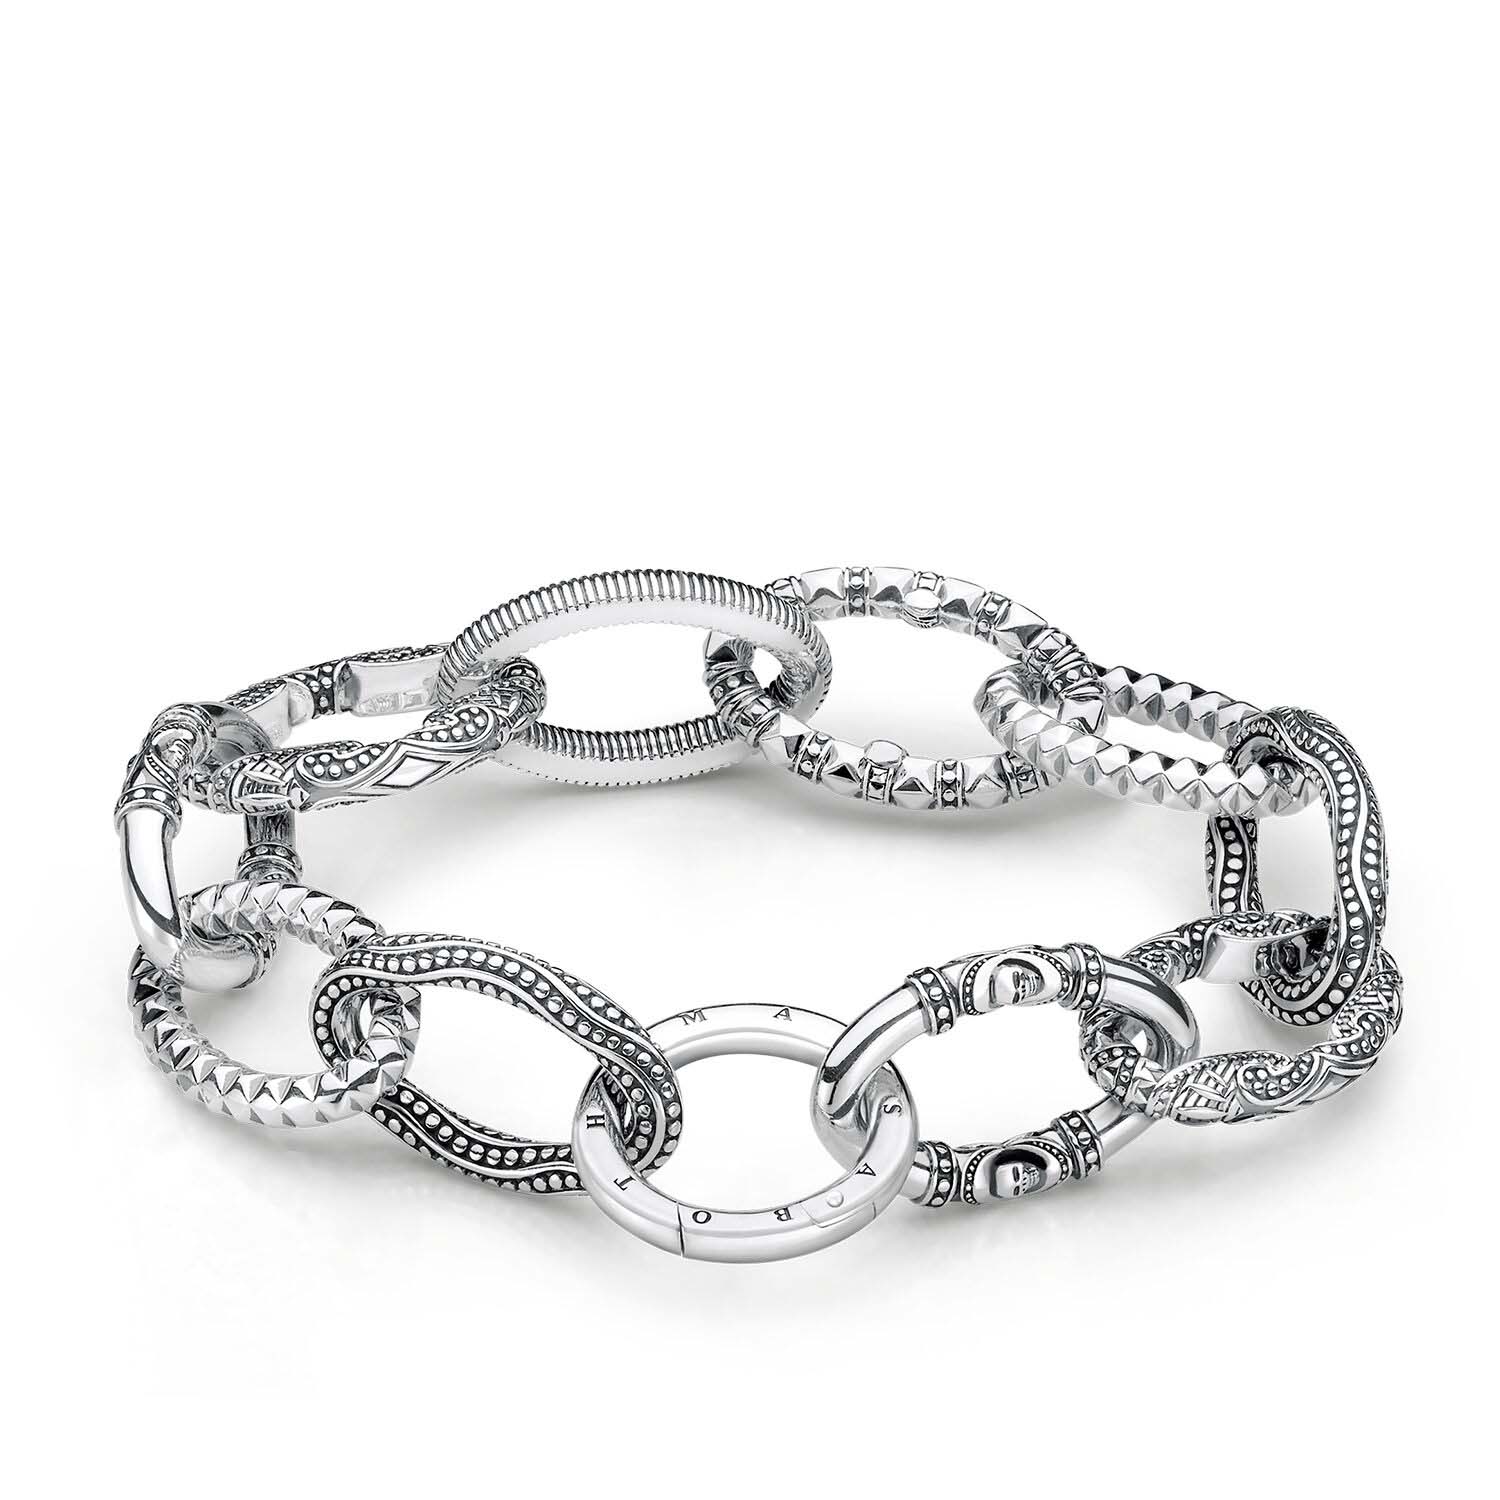 Großhandel OEM-Armband 925 Sterling OEM/ODM-Schmuck Silber Machen Sie Ihre neue Silberkollektion